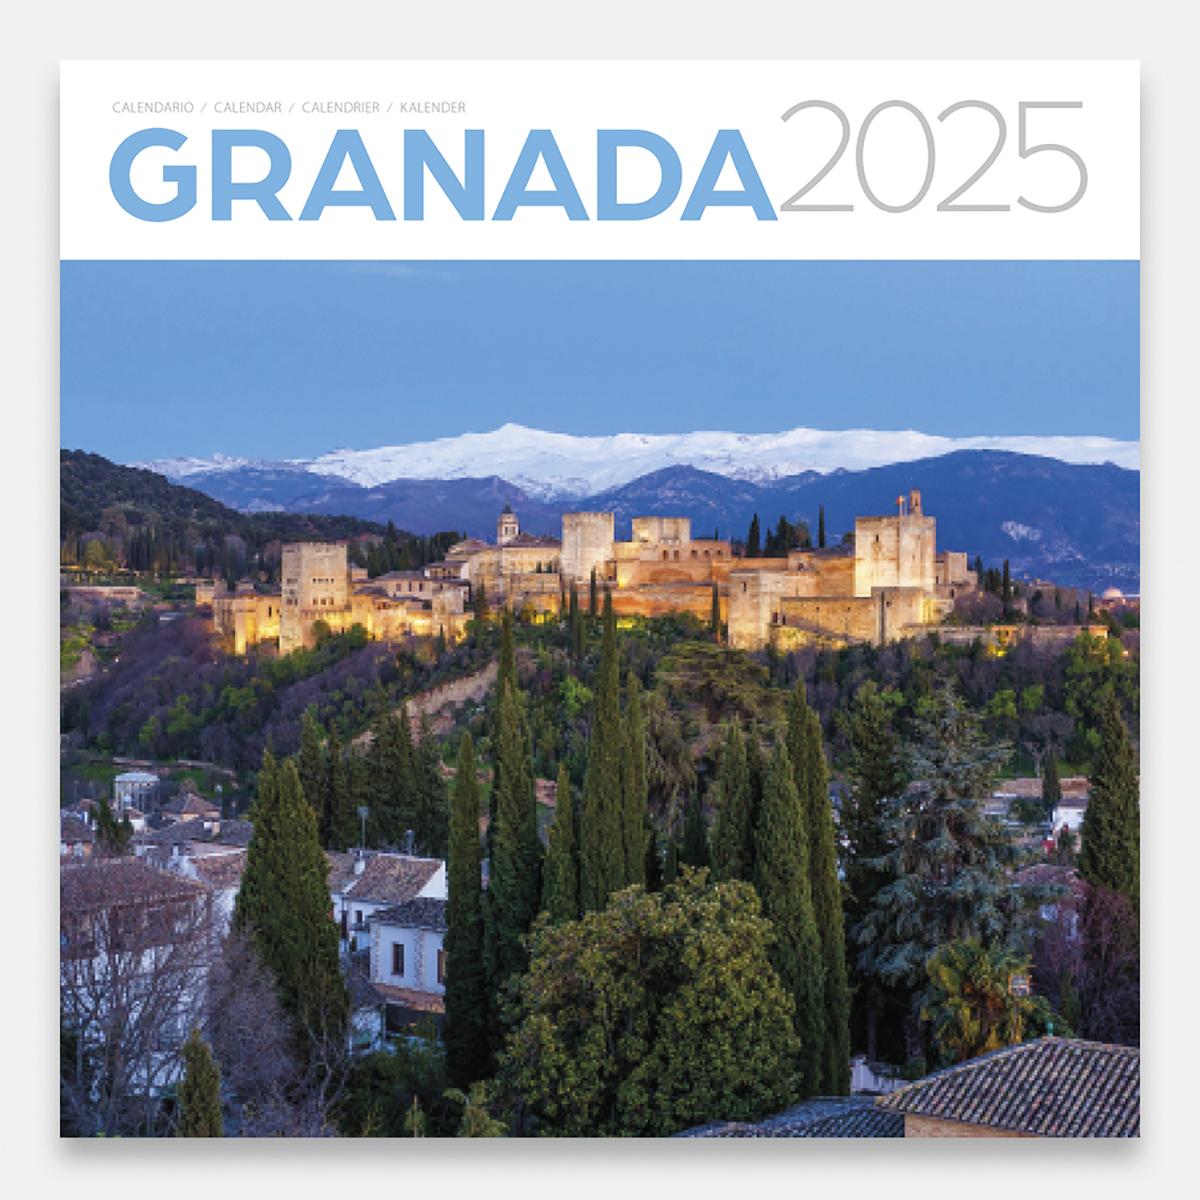 Calendario 2025 Granada y la Alhambra 25grg calendario pared 2025 granada